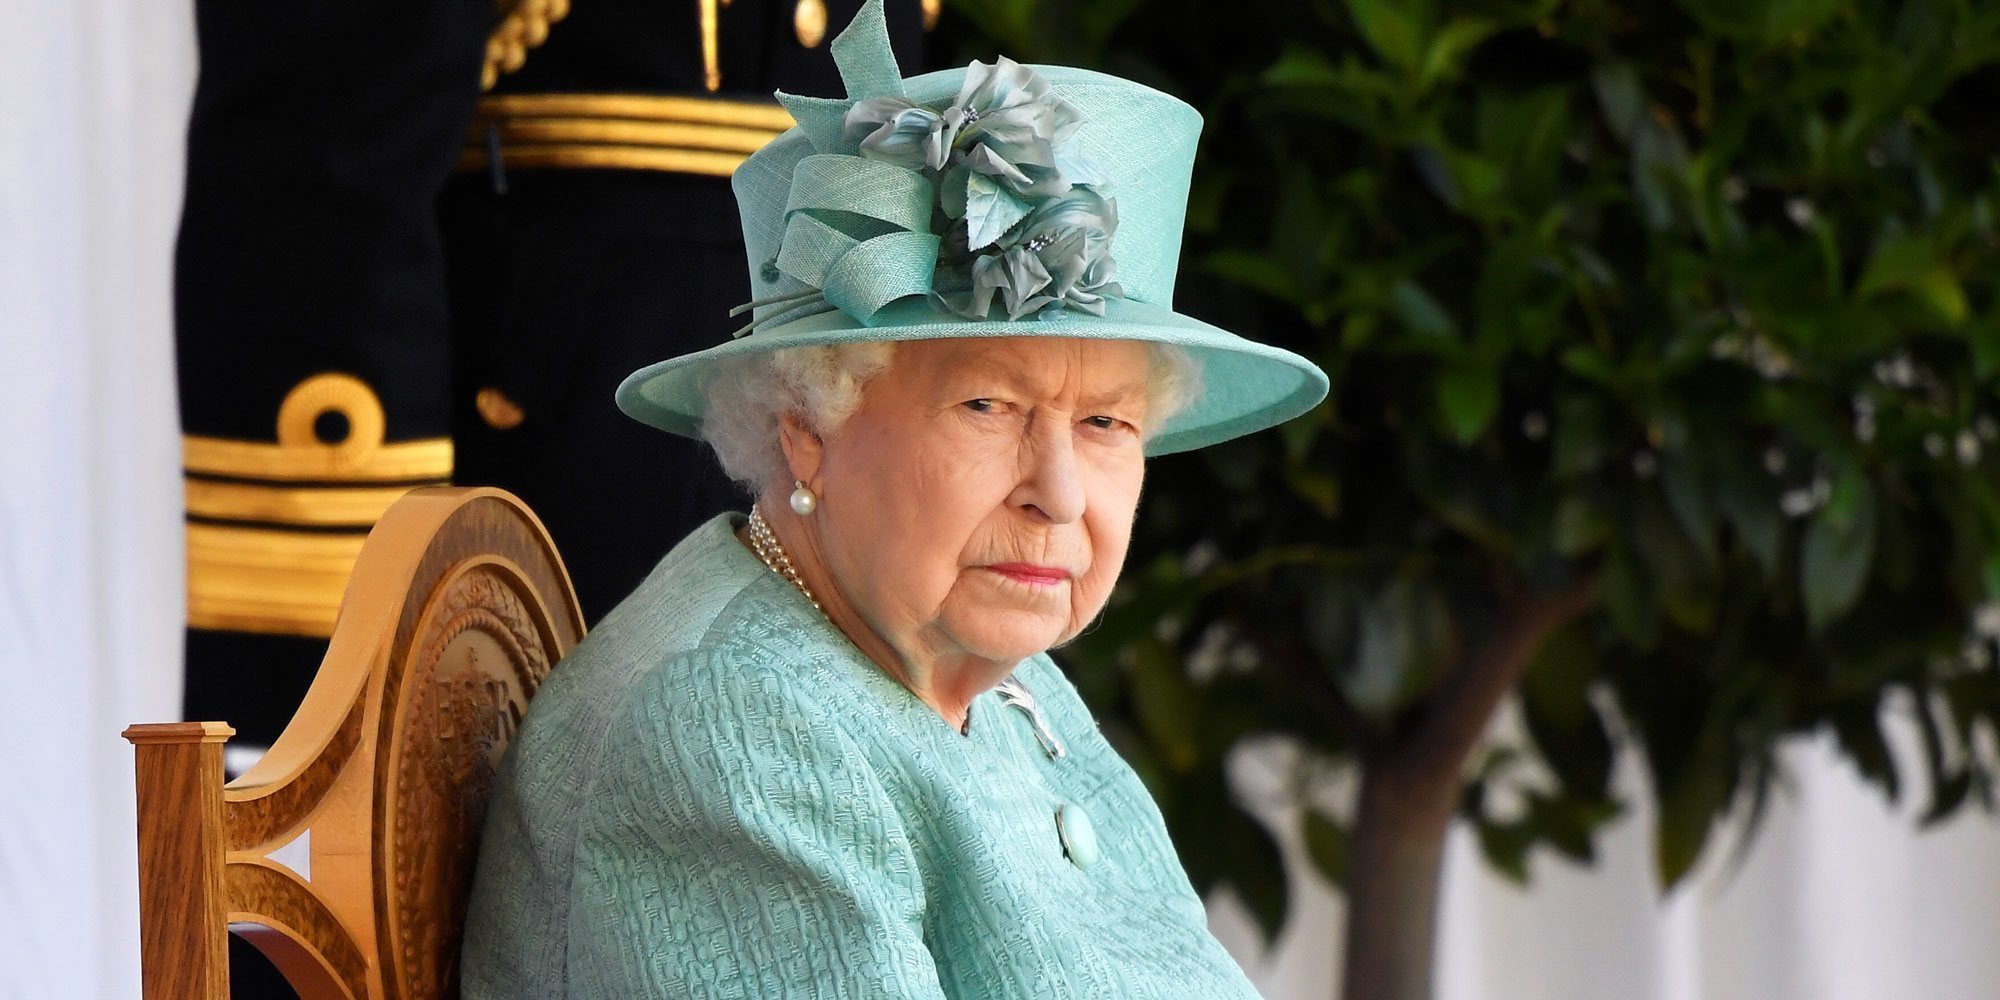 La Reina Isabel reaparece en un atípico Trooping de Colour sin su familia y lejos de Londres